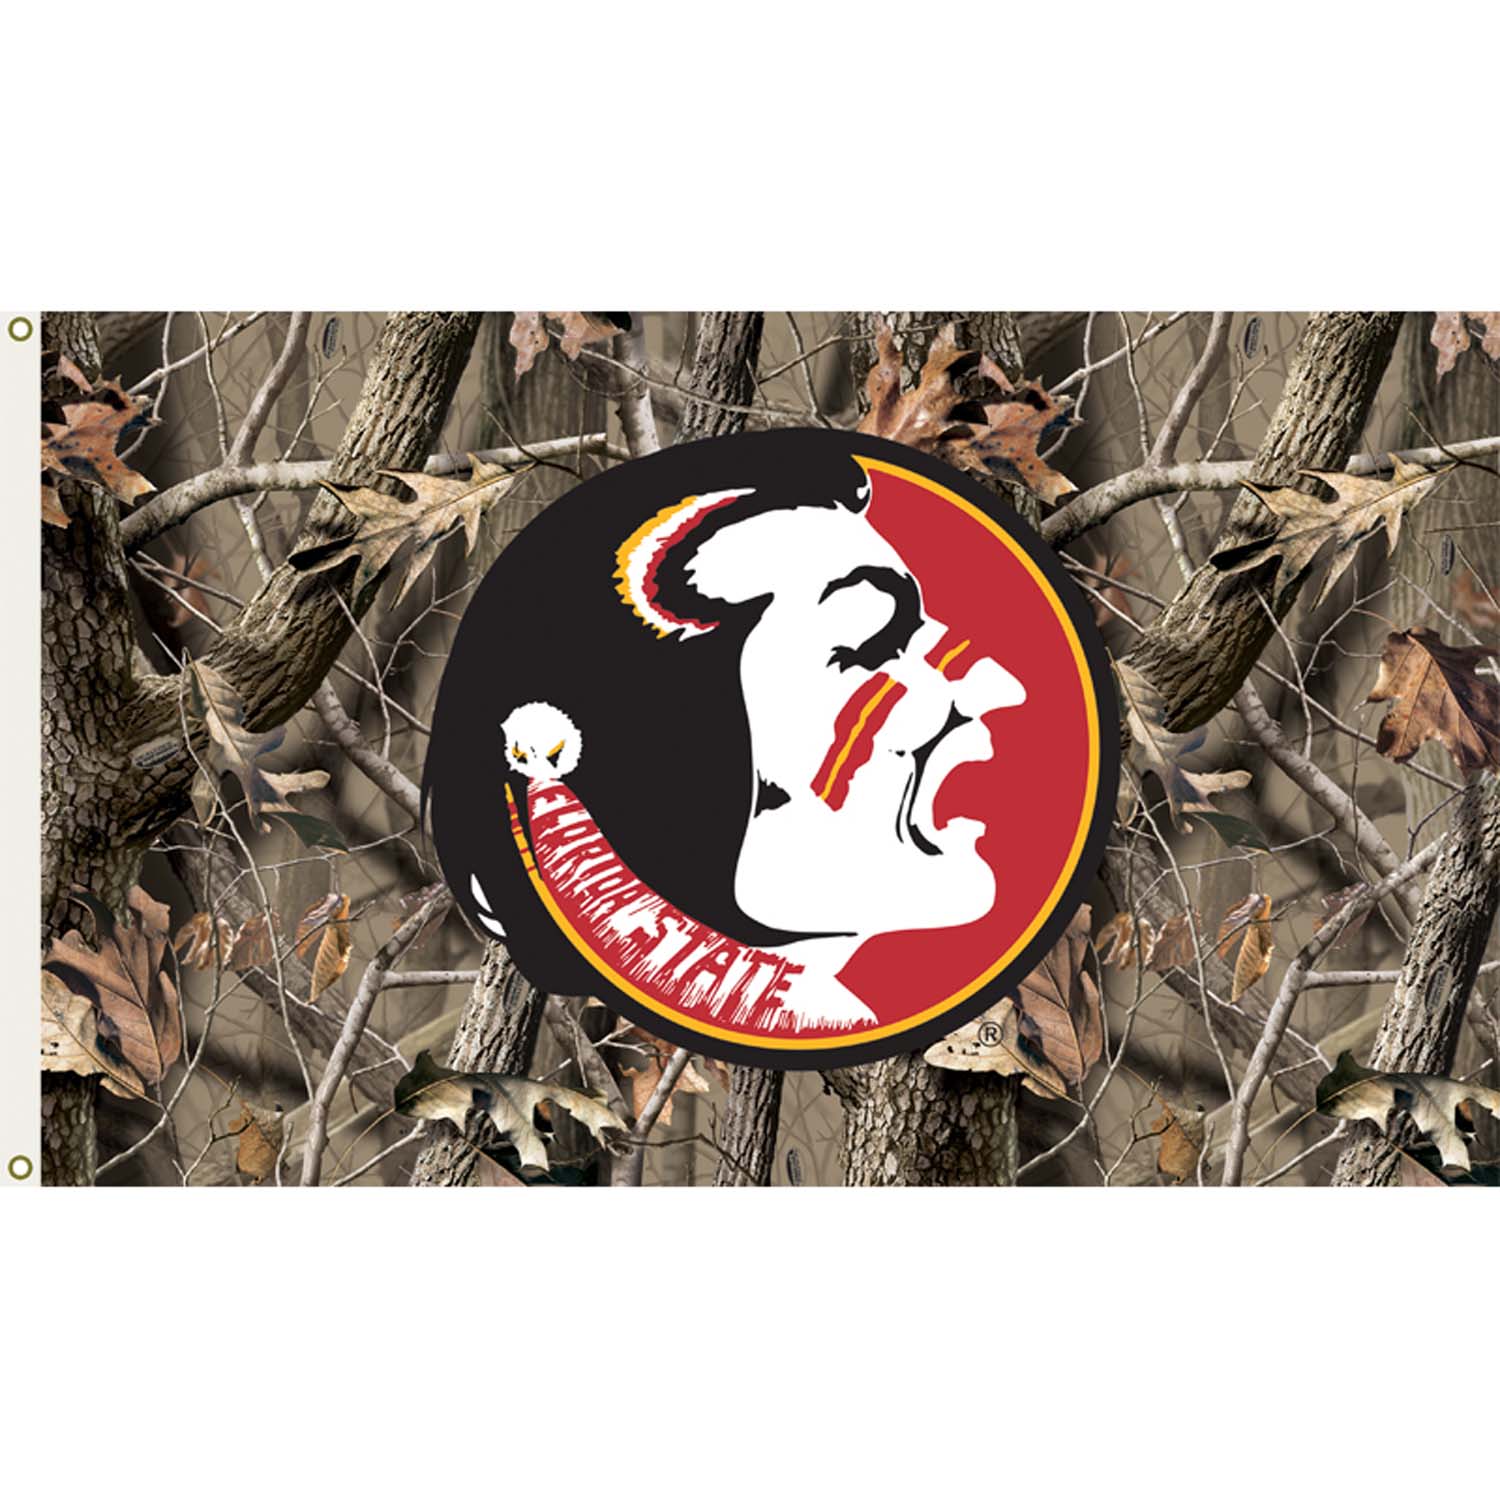 Camo Flag Logo - Florida State Seminoles 3ft x 5ft Team Flag - Realtree Camo Design